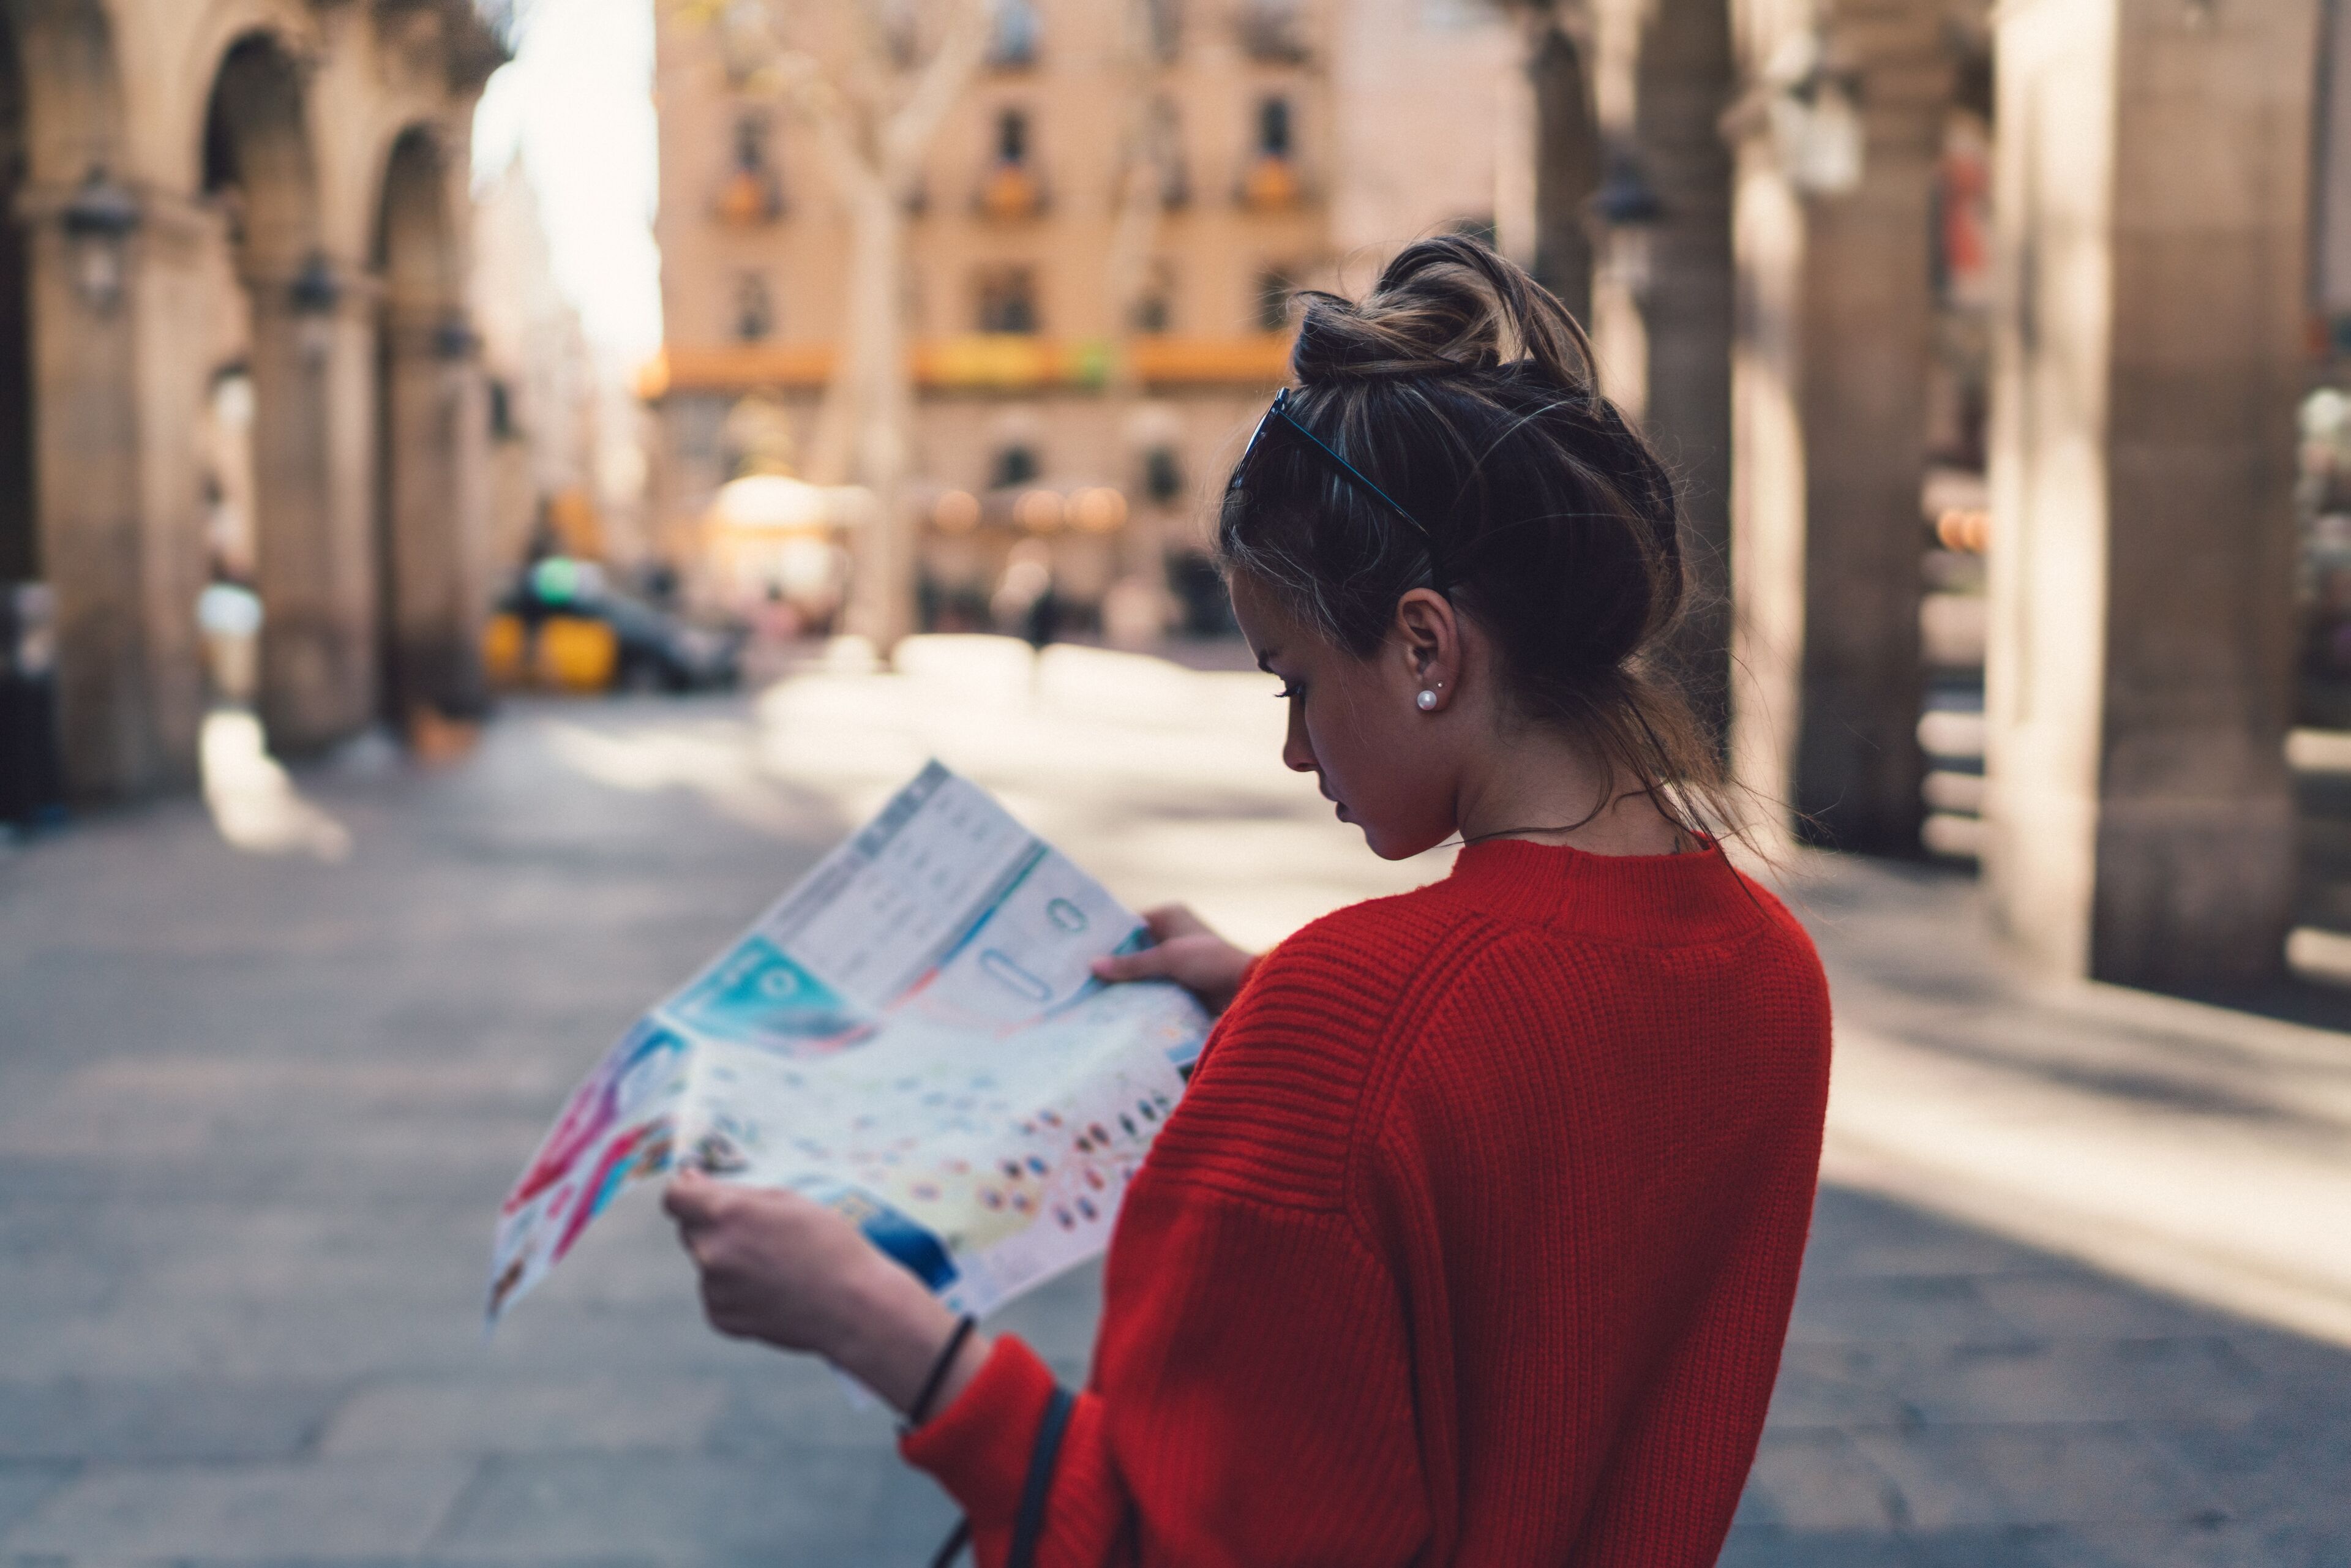 Une jeune femme en pull rouge vif étudie attentivement une carte, debout dans une rue pavée avec une architecture historique floue en arrière-plan.